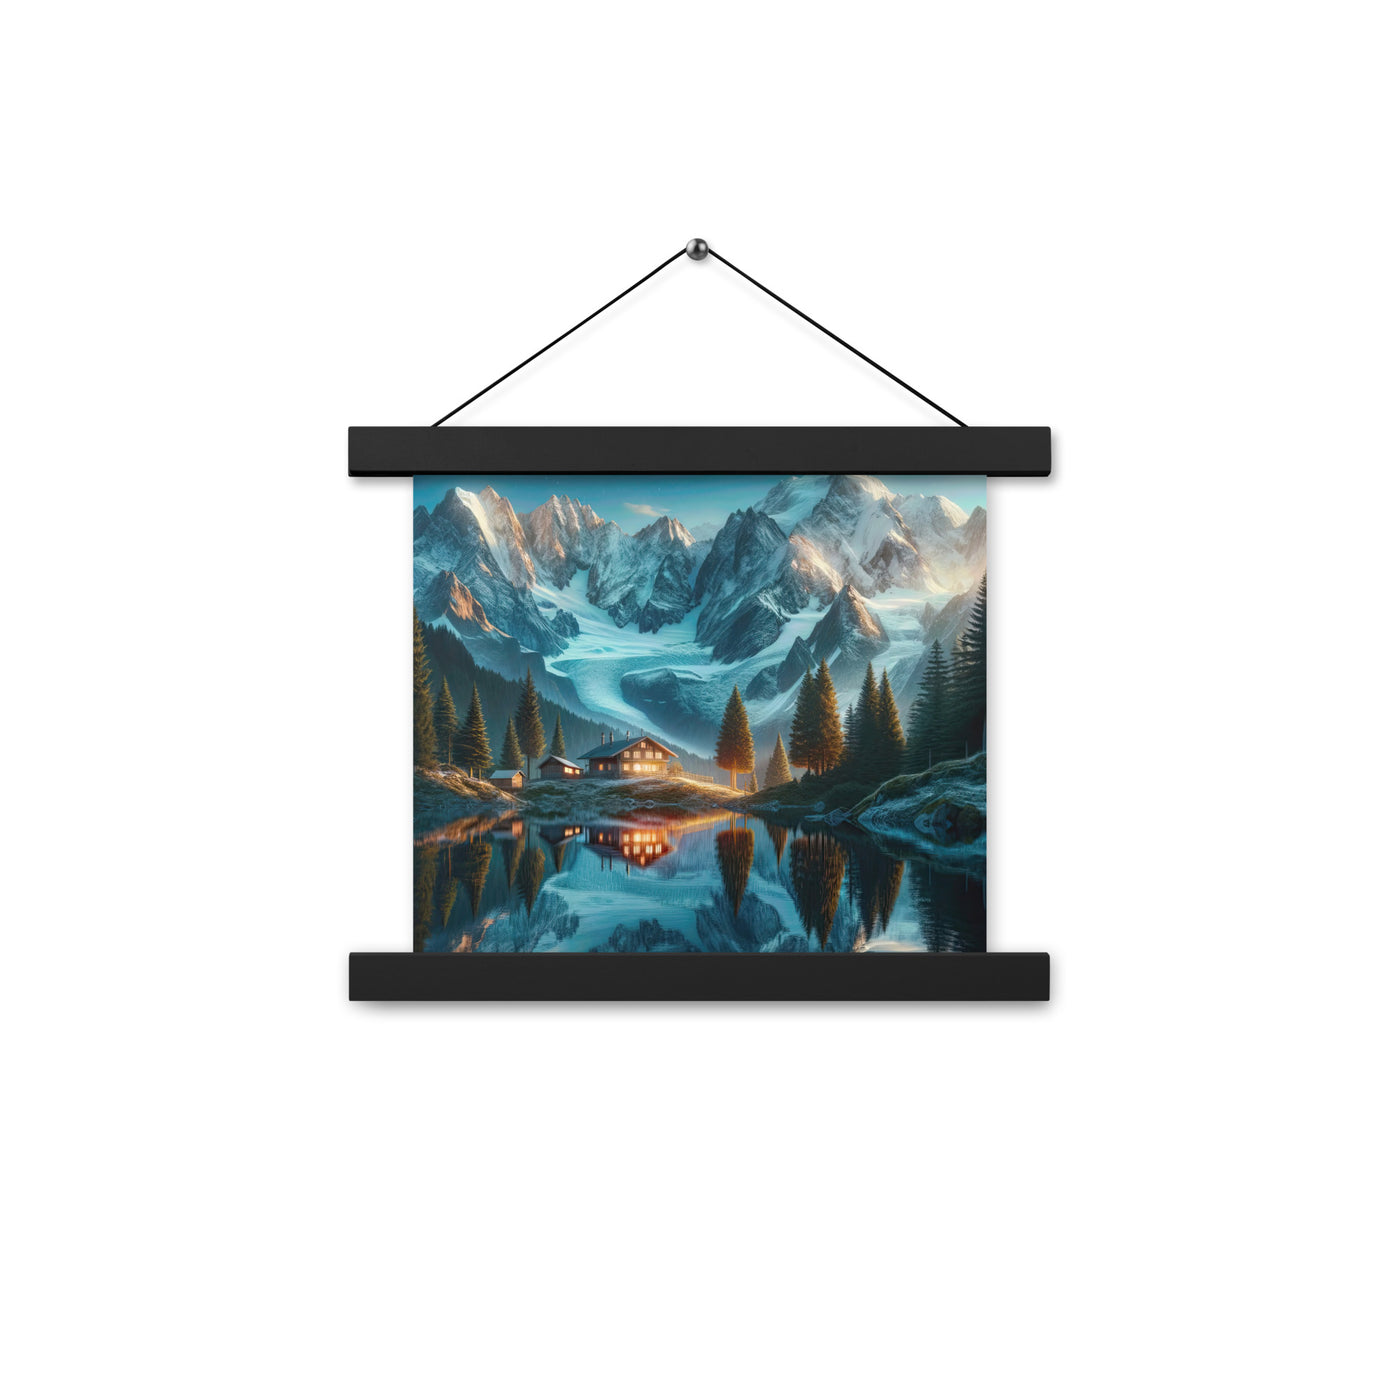 Stille Alpenmajestätik: Digitale Kunst mit Schnee und Bergsee-Spiegelung - Premium Poster mit Aufhängung berge xxx yyy zzz 25.4 x 25.4 cm